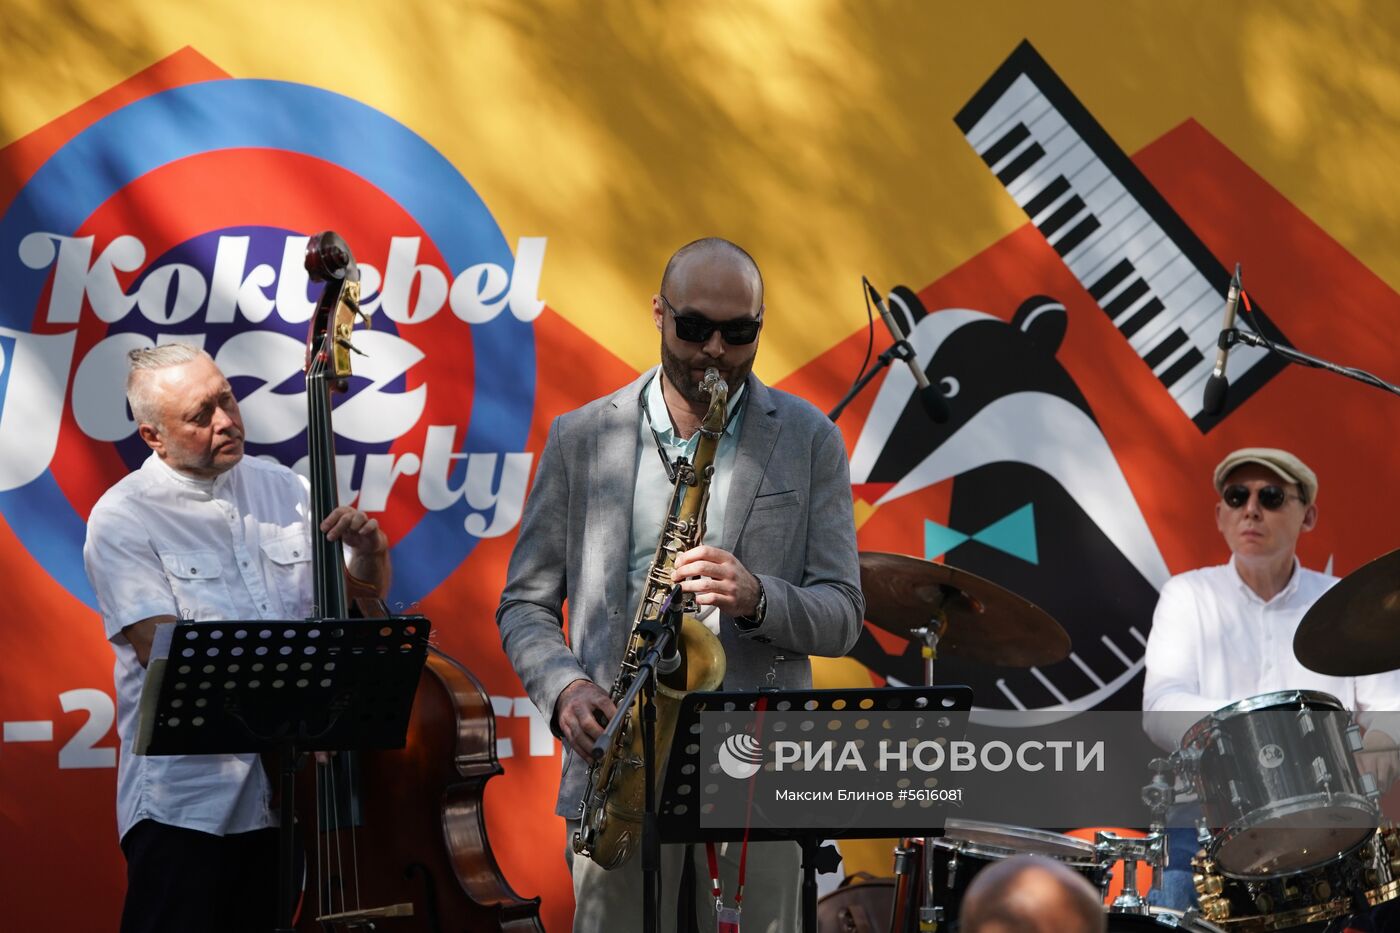 16-й международный музыкальный фестиваль Koktebel Jazz Party. День первый